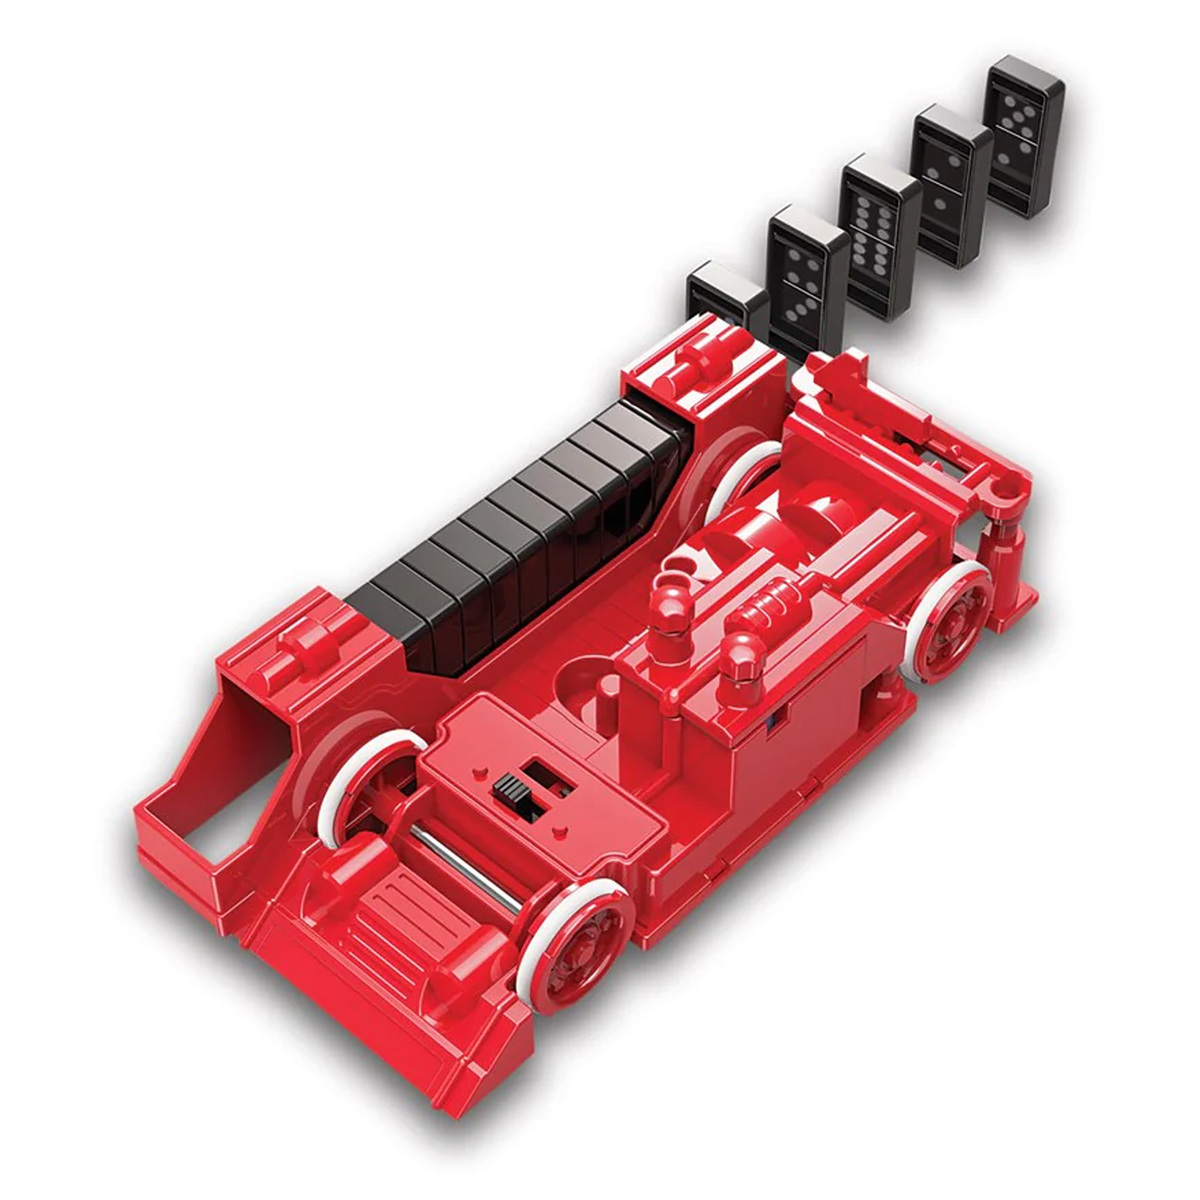 4M Kidzrobotix - Dominobot Kit, 3446